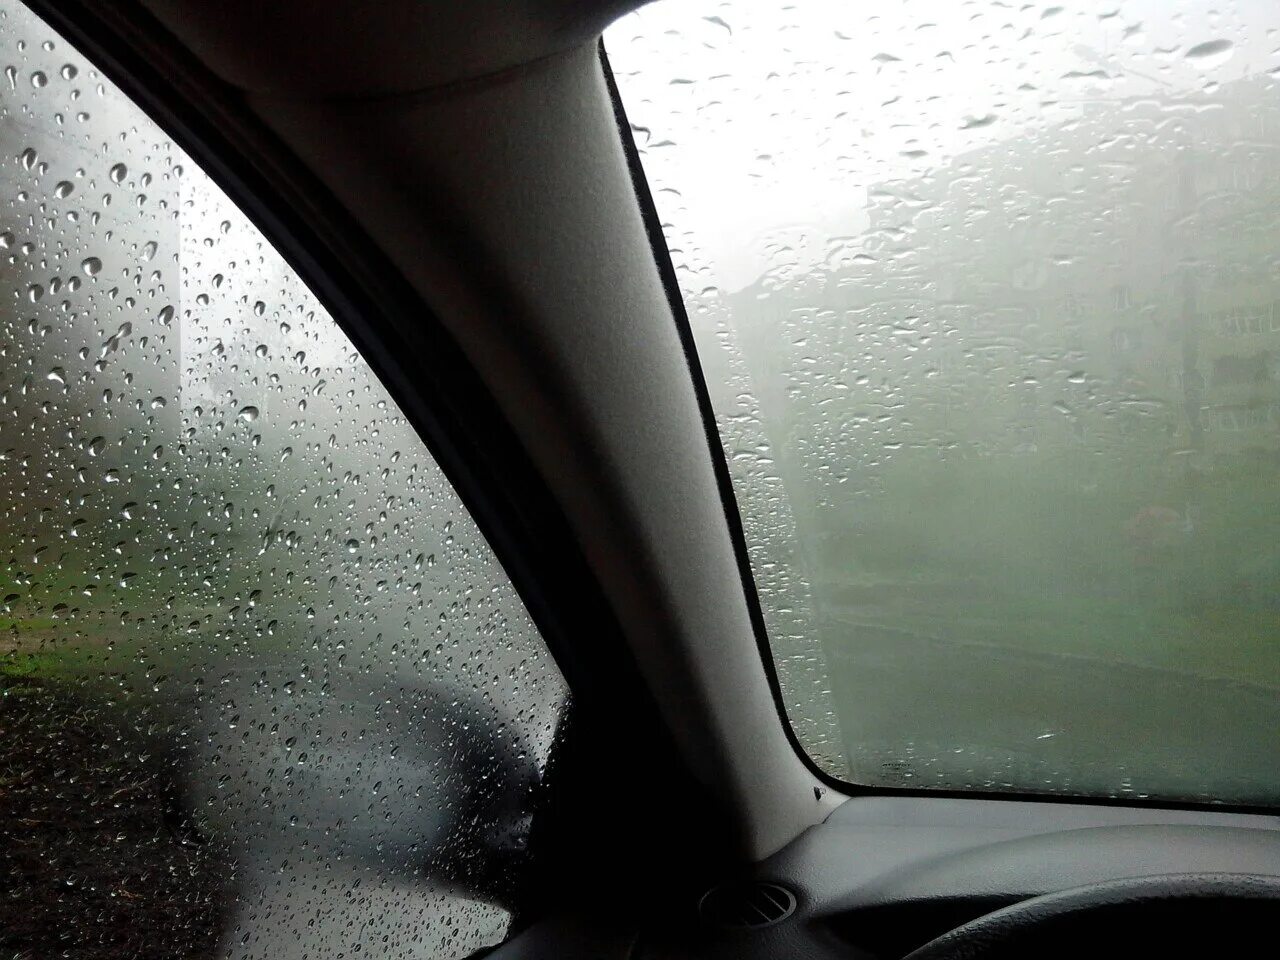 Потеет машина в дождь что делать. Киа Рио потеют окна в дождь. Потеют окна в дождь ВАЗ 2110. Потеют окна ВАЗ 2110 во время дождя. Вид на запотевшее окно в бане.